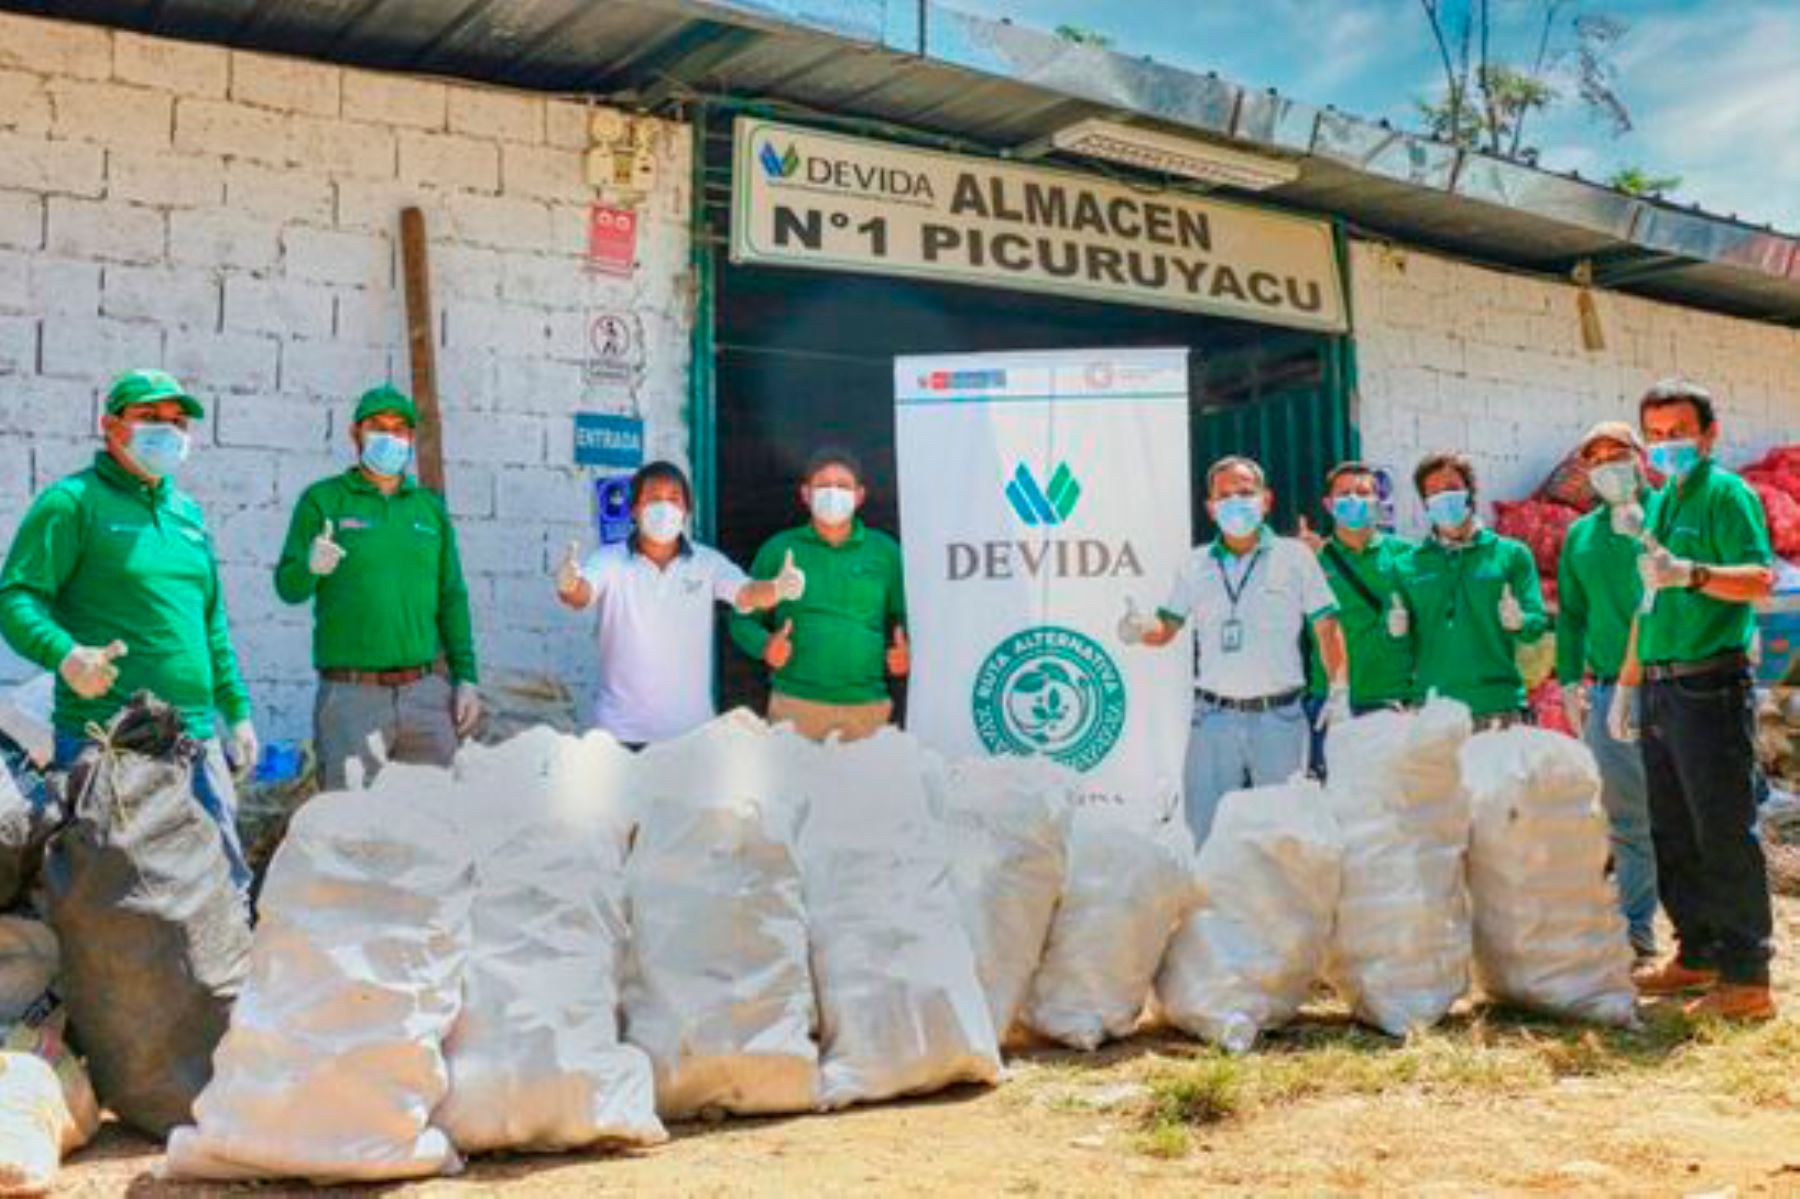 La campaña de recolección de envases se desarrolló durante un mes de trabajo del equipo técnico de la oficina zonal de Tingo María en el valle del Alto Huallaga. Foto: ANDINA/Devida